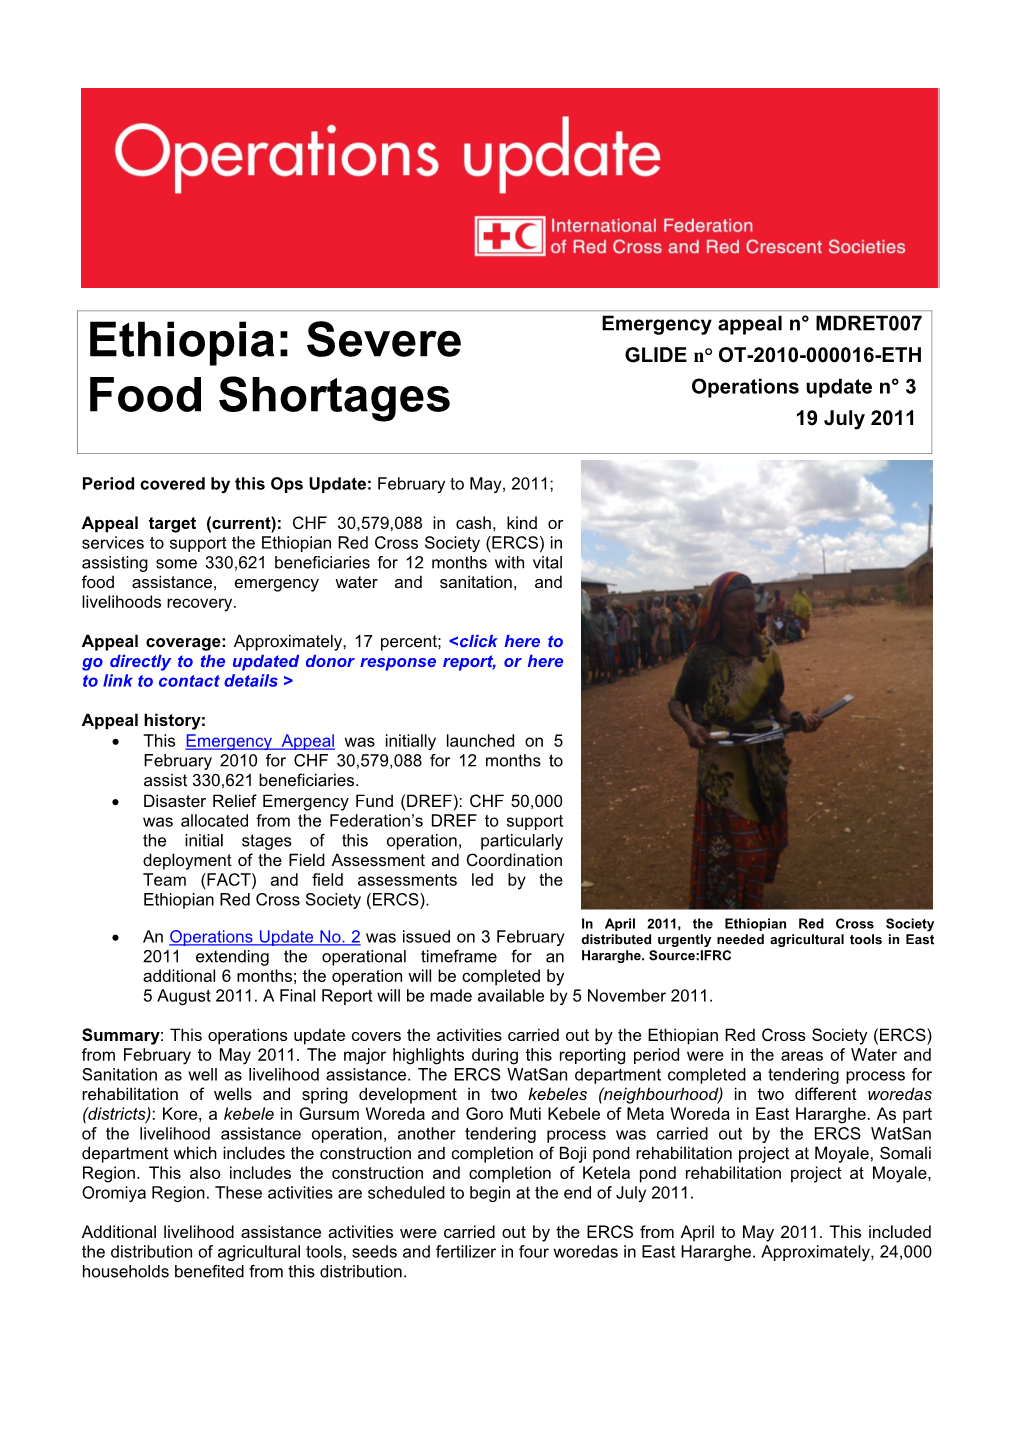 Ethiopia: Severe GLIDE N° OT-2010-000016-ETH